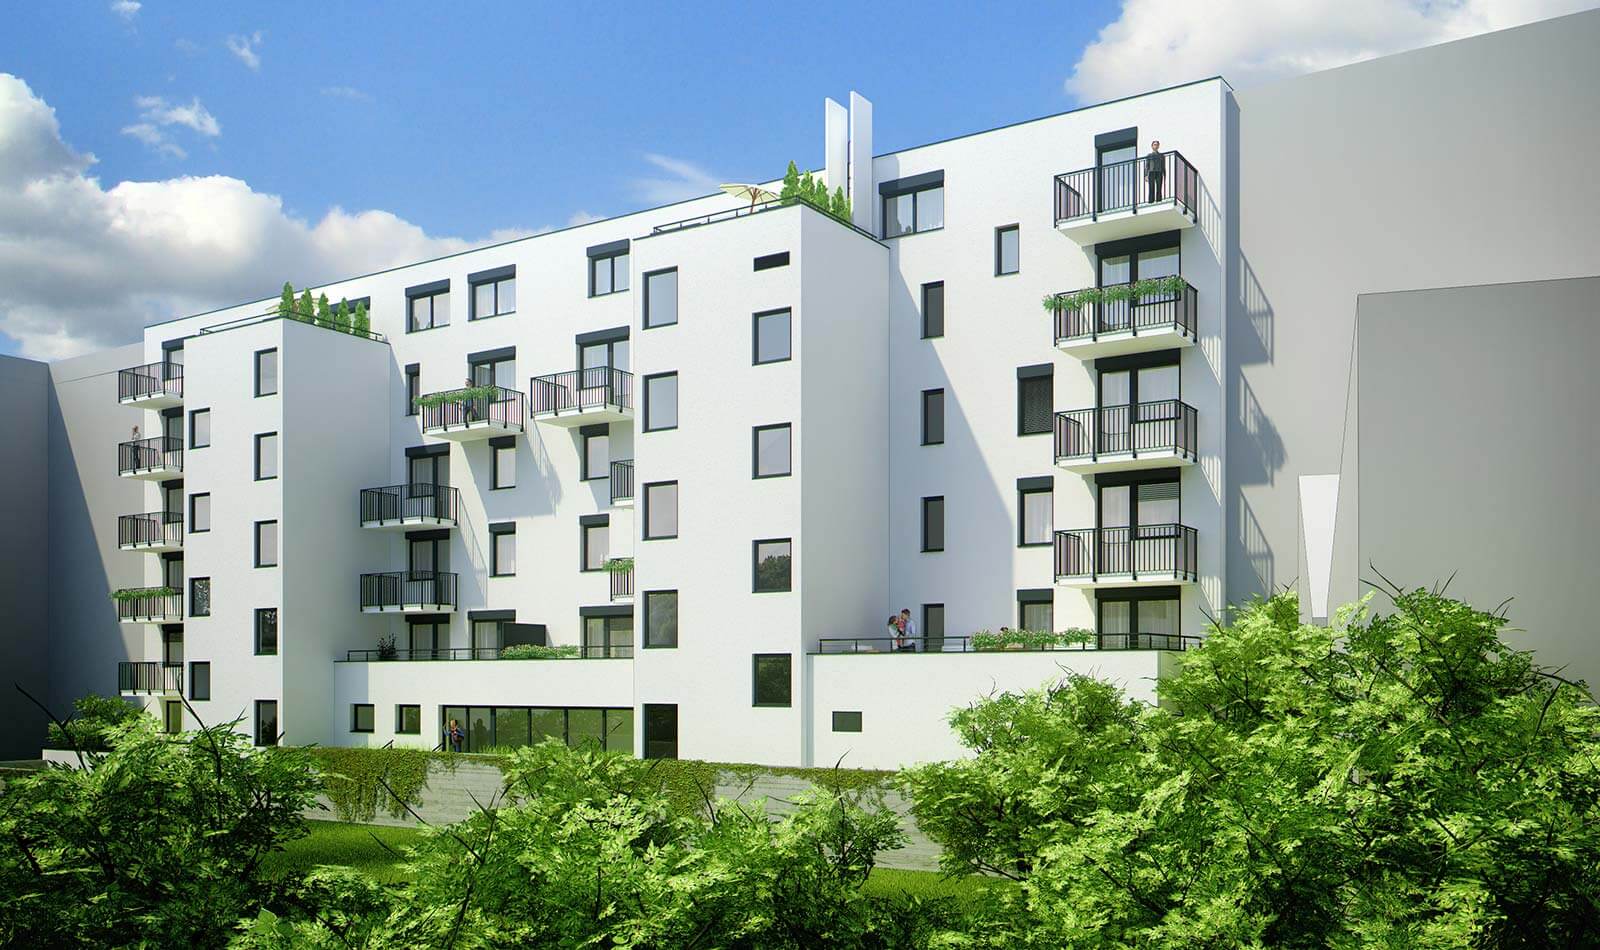 Predané: Novostavba 2 izbový byt, širšie centrum v Bratislave, Beskydská ulica, 56,85m2, štandard.-8